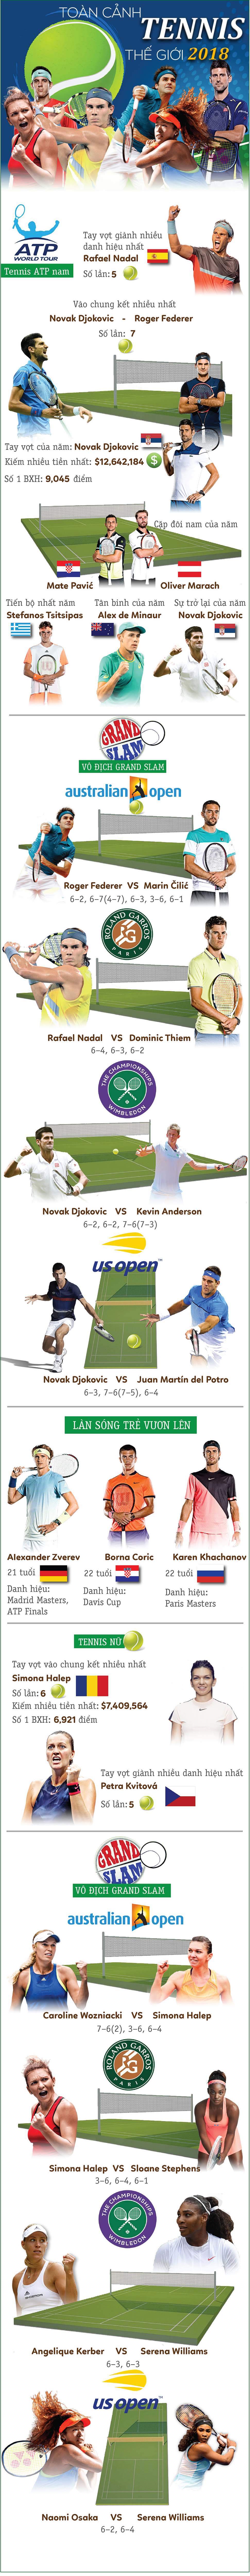 Đấu trường tennis 2018: Nadal - Federer - Djokovic chia giang sơn - 1